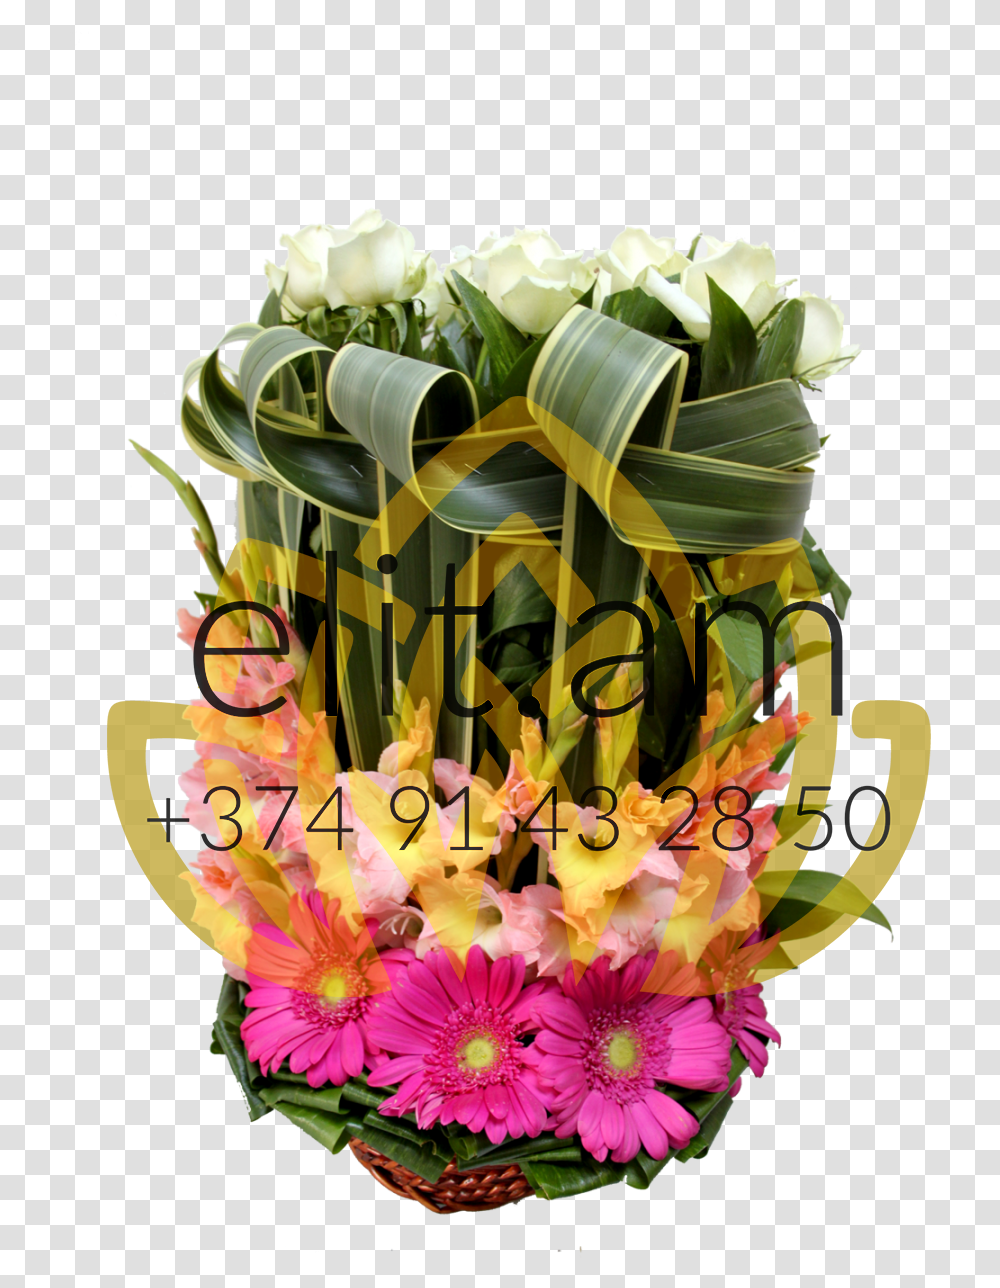 Flower Basket Bouquet, Plant, Floral Design Transparent Png